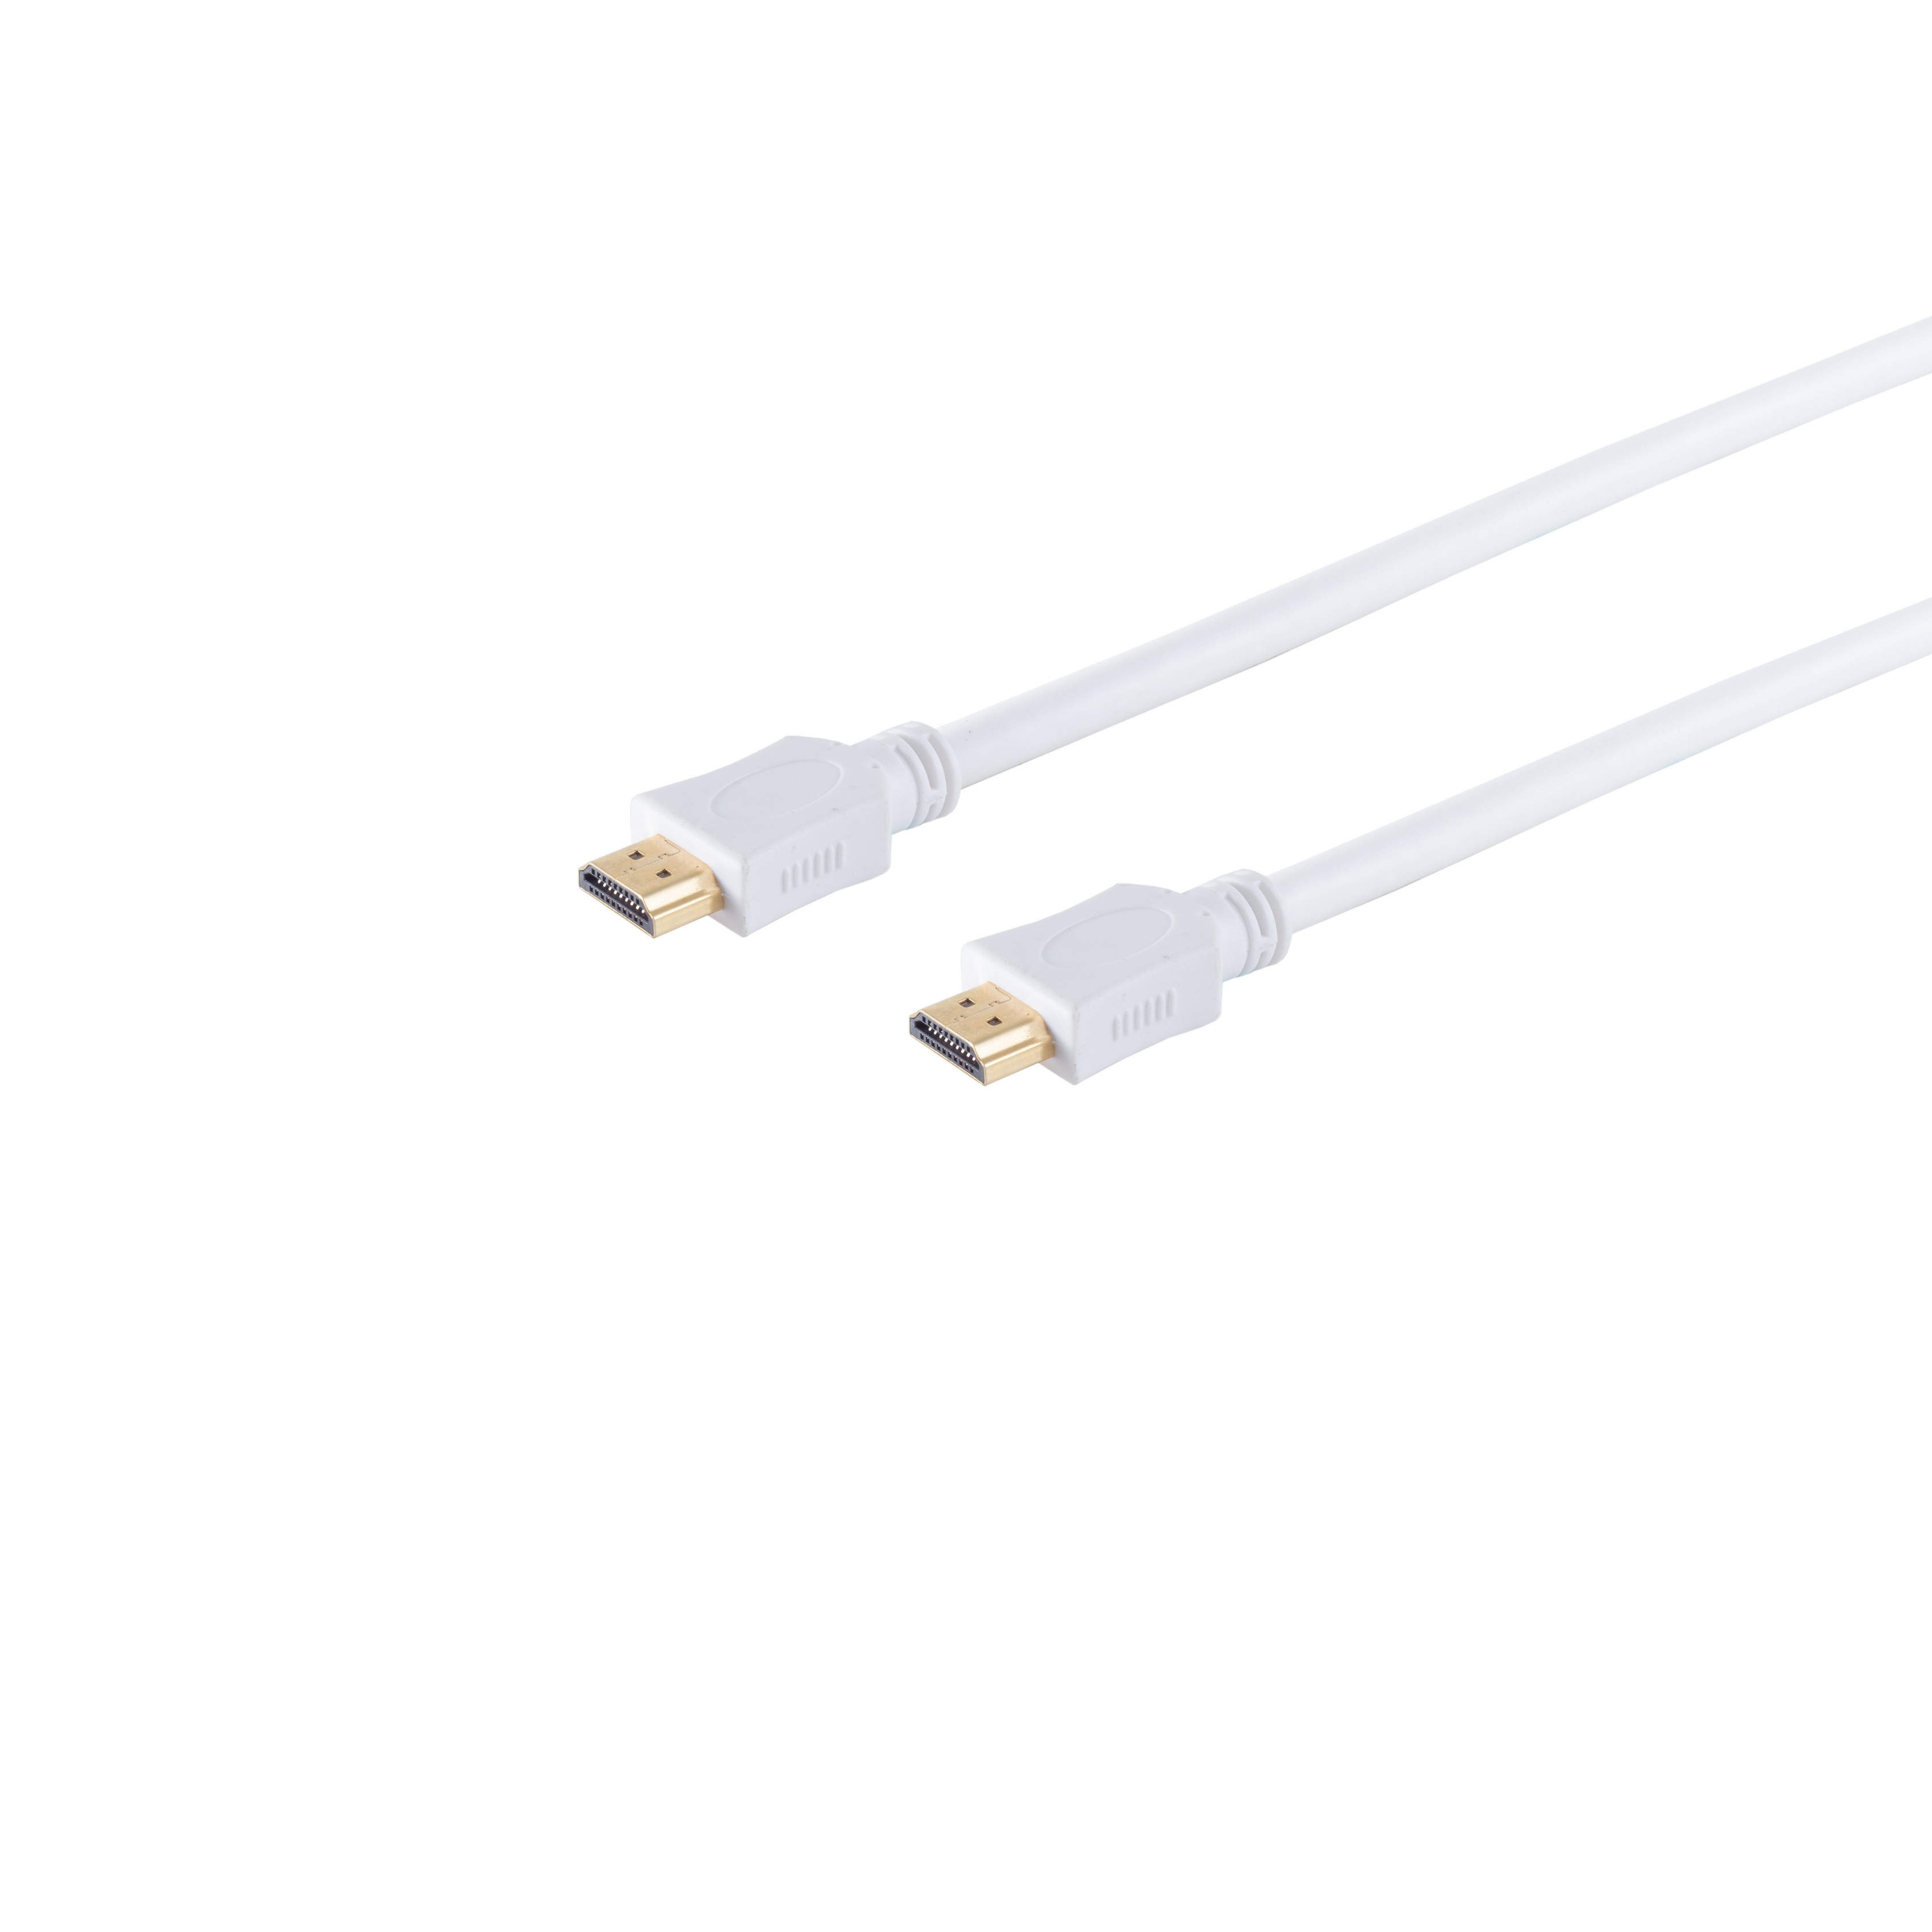 Kabel HDMI A-Stecker weiß 1,5m S/CONN A-Stecker/HDMI CONNECTIVITY HDMI verg. HEAC MAXIMUM